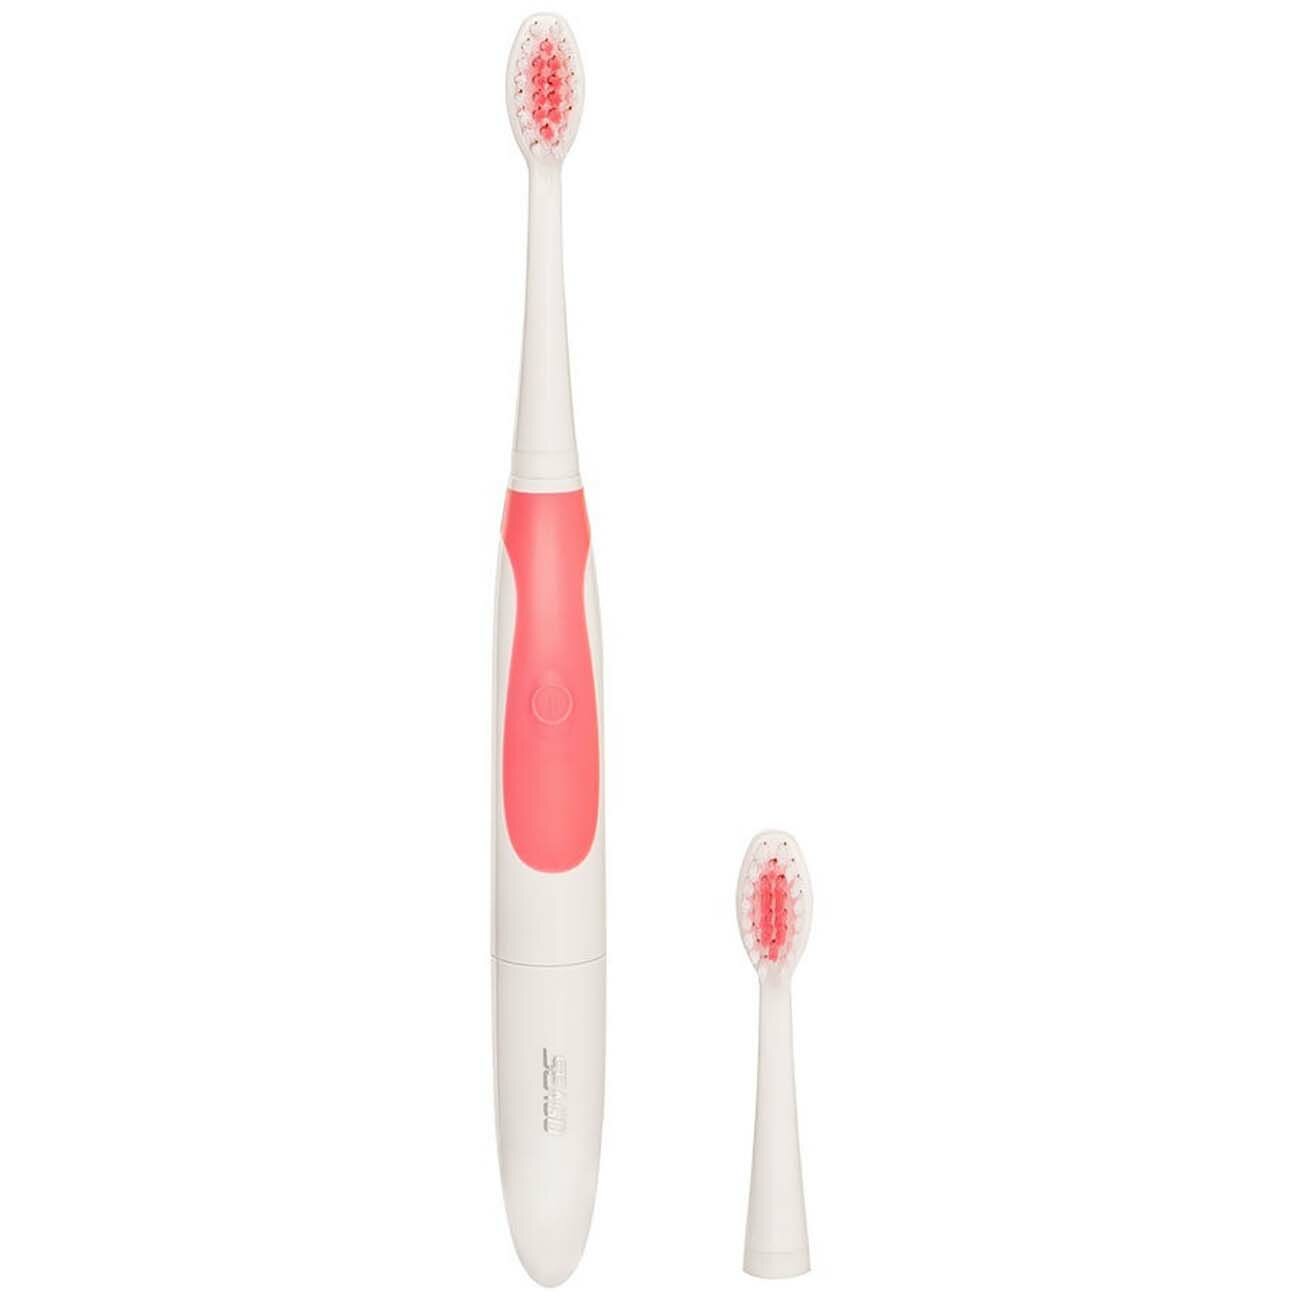 Электрическая зубная щетка Seago SG-912 Pink